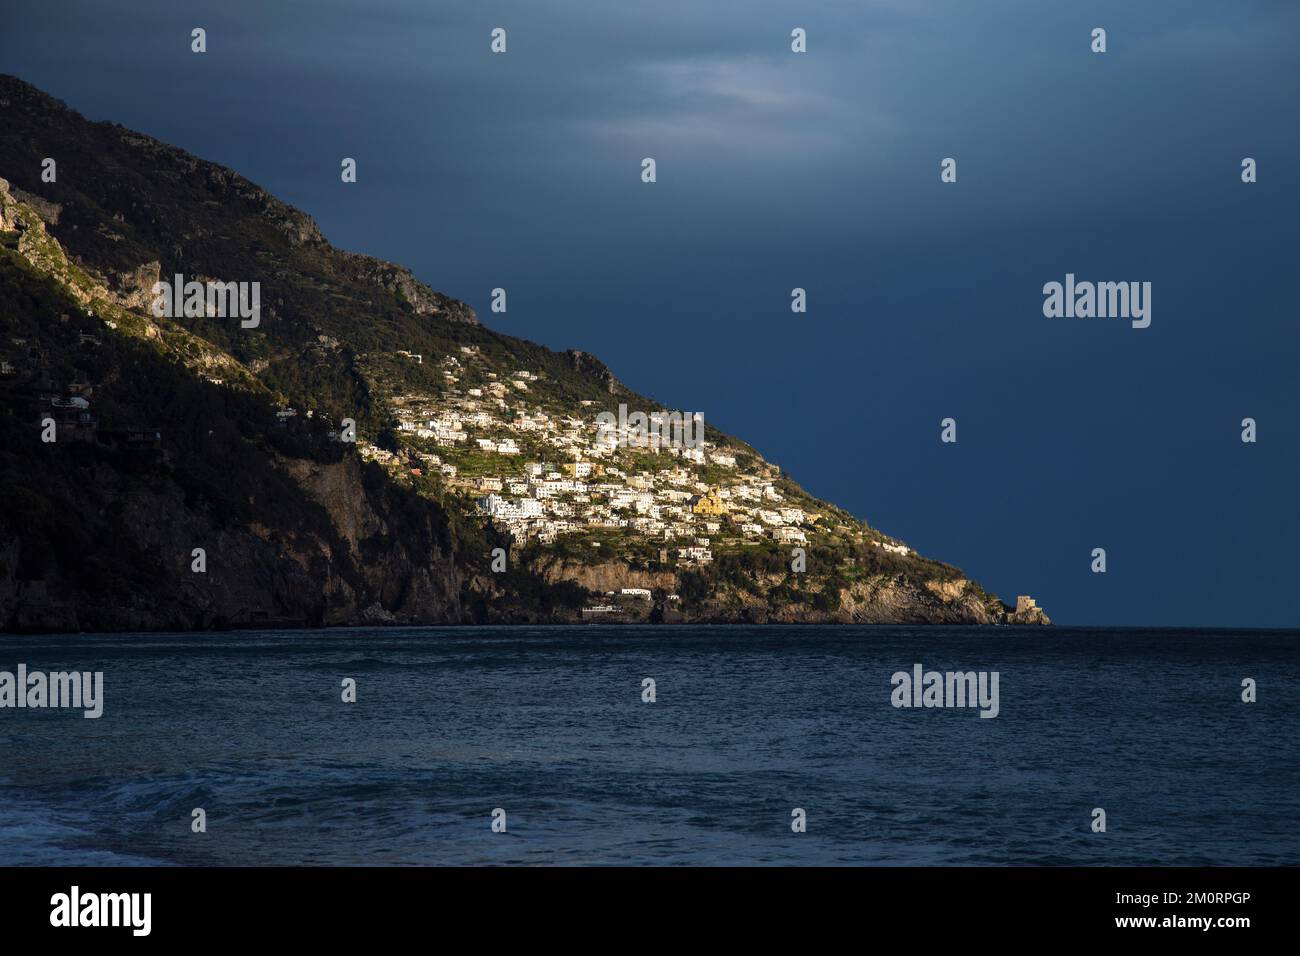 Houses on a mountain side, view from Positano Spiaggia Beach, Positano, Campania, Italy Stock Photo